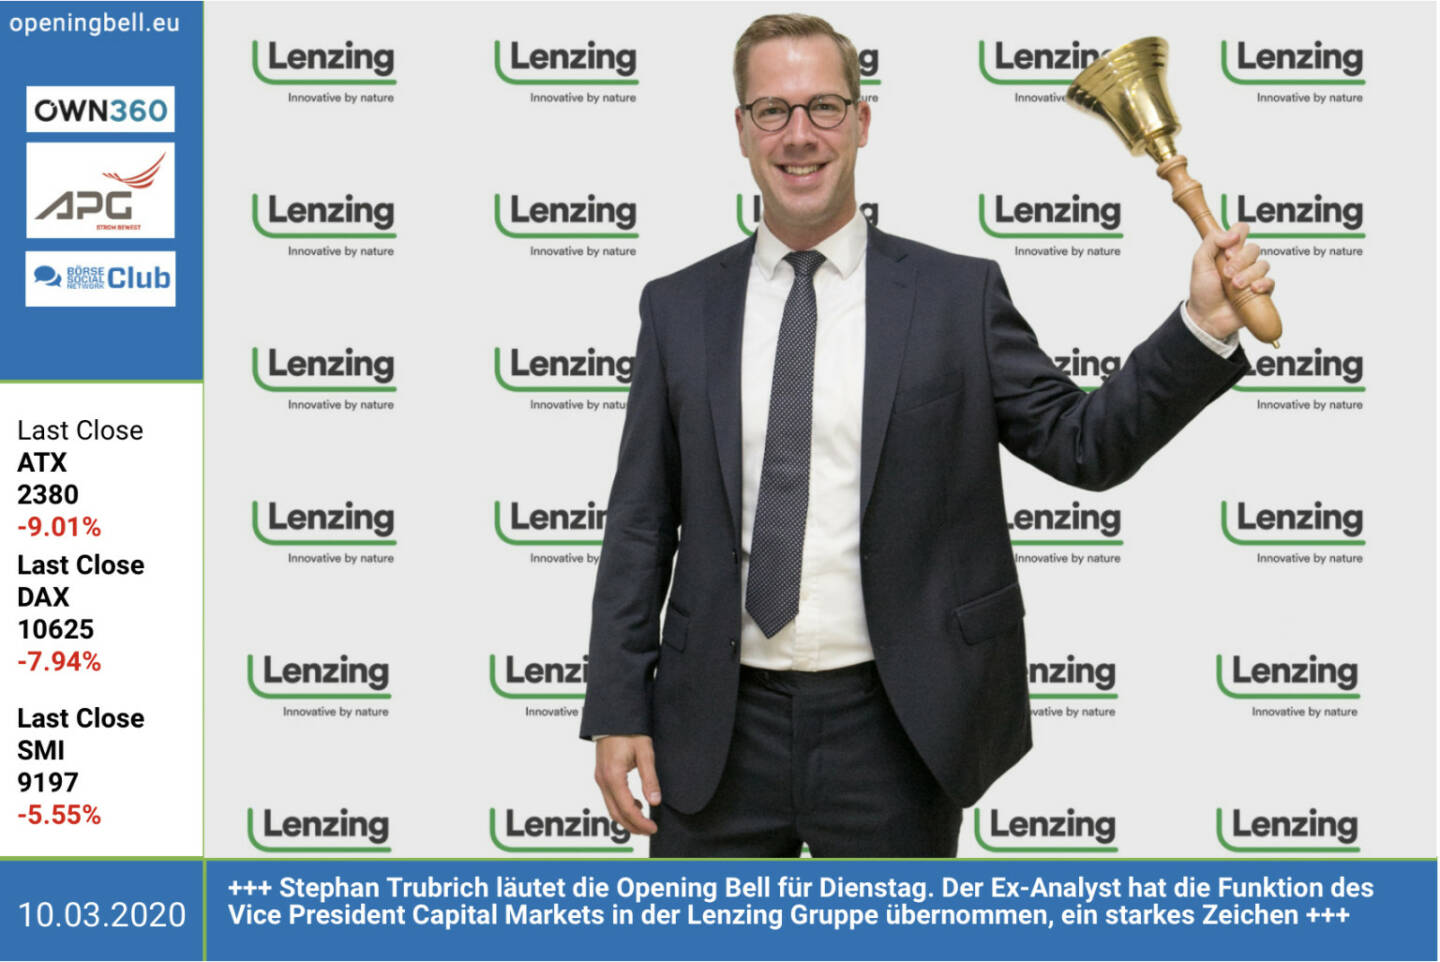 10.3.: Stephan Trubrich läutet die Opening Bell für Dienstag. Der Ex-Analyst hat die Funktion des Vice President Capital Markets in der Lenzing Gruppe übernommen, ein starkes Zeichen des ATX-Unternehmens http://www.lenzing.com